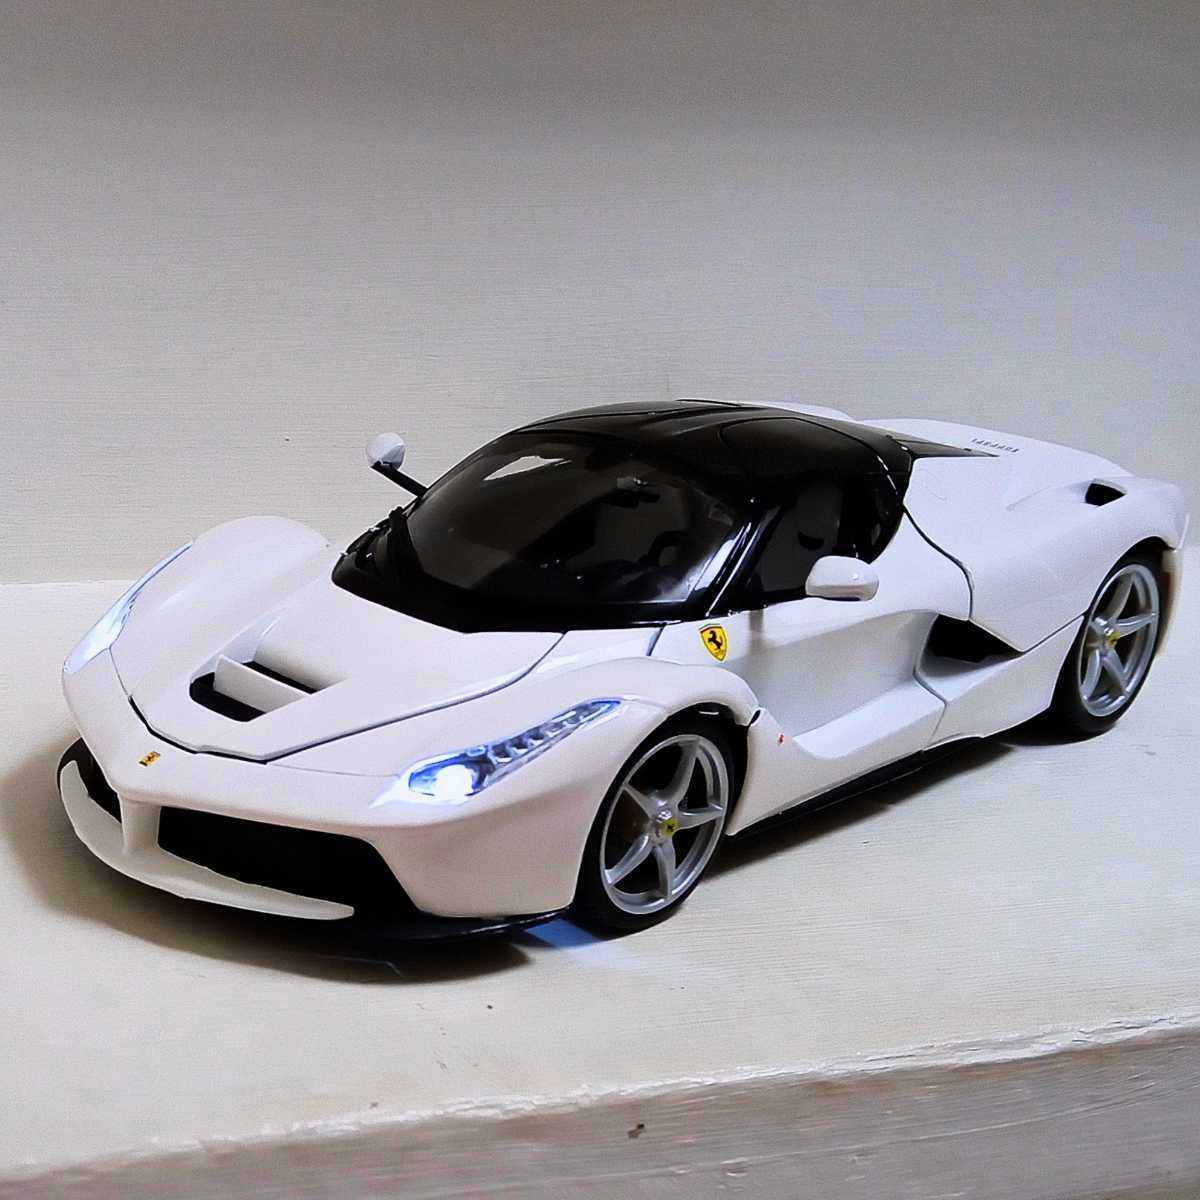 ダイキャスト モデルカー ミニカー ラ・フェラーリ La・Ferrari ホワイト プチカスタム 展示品現状 状態良好